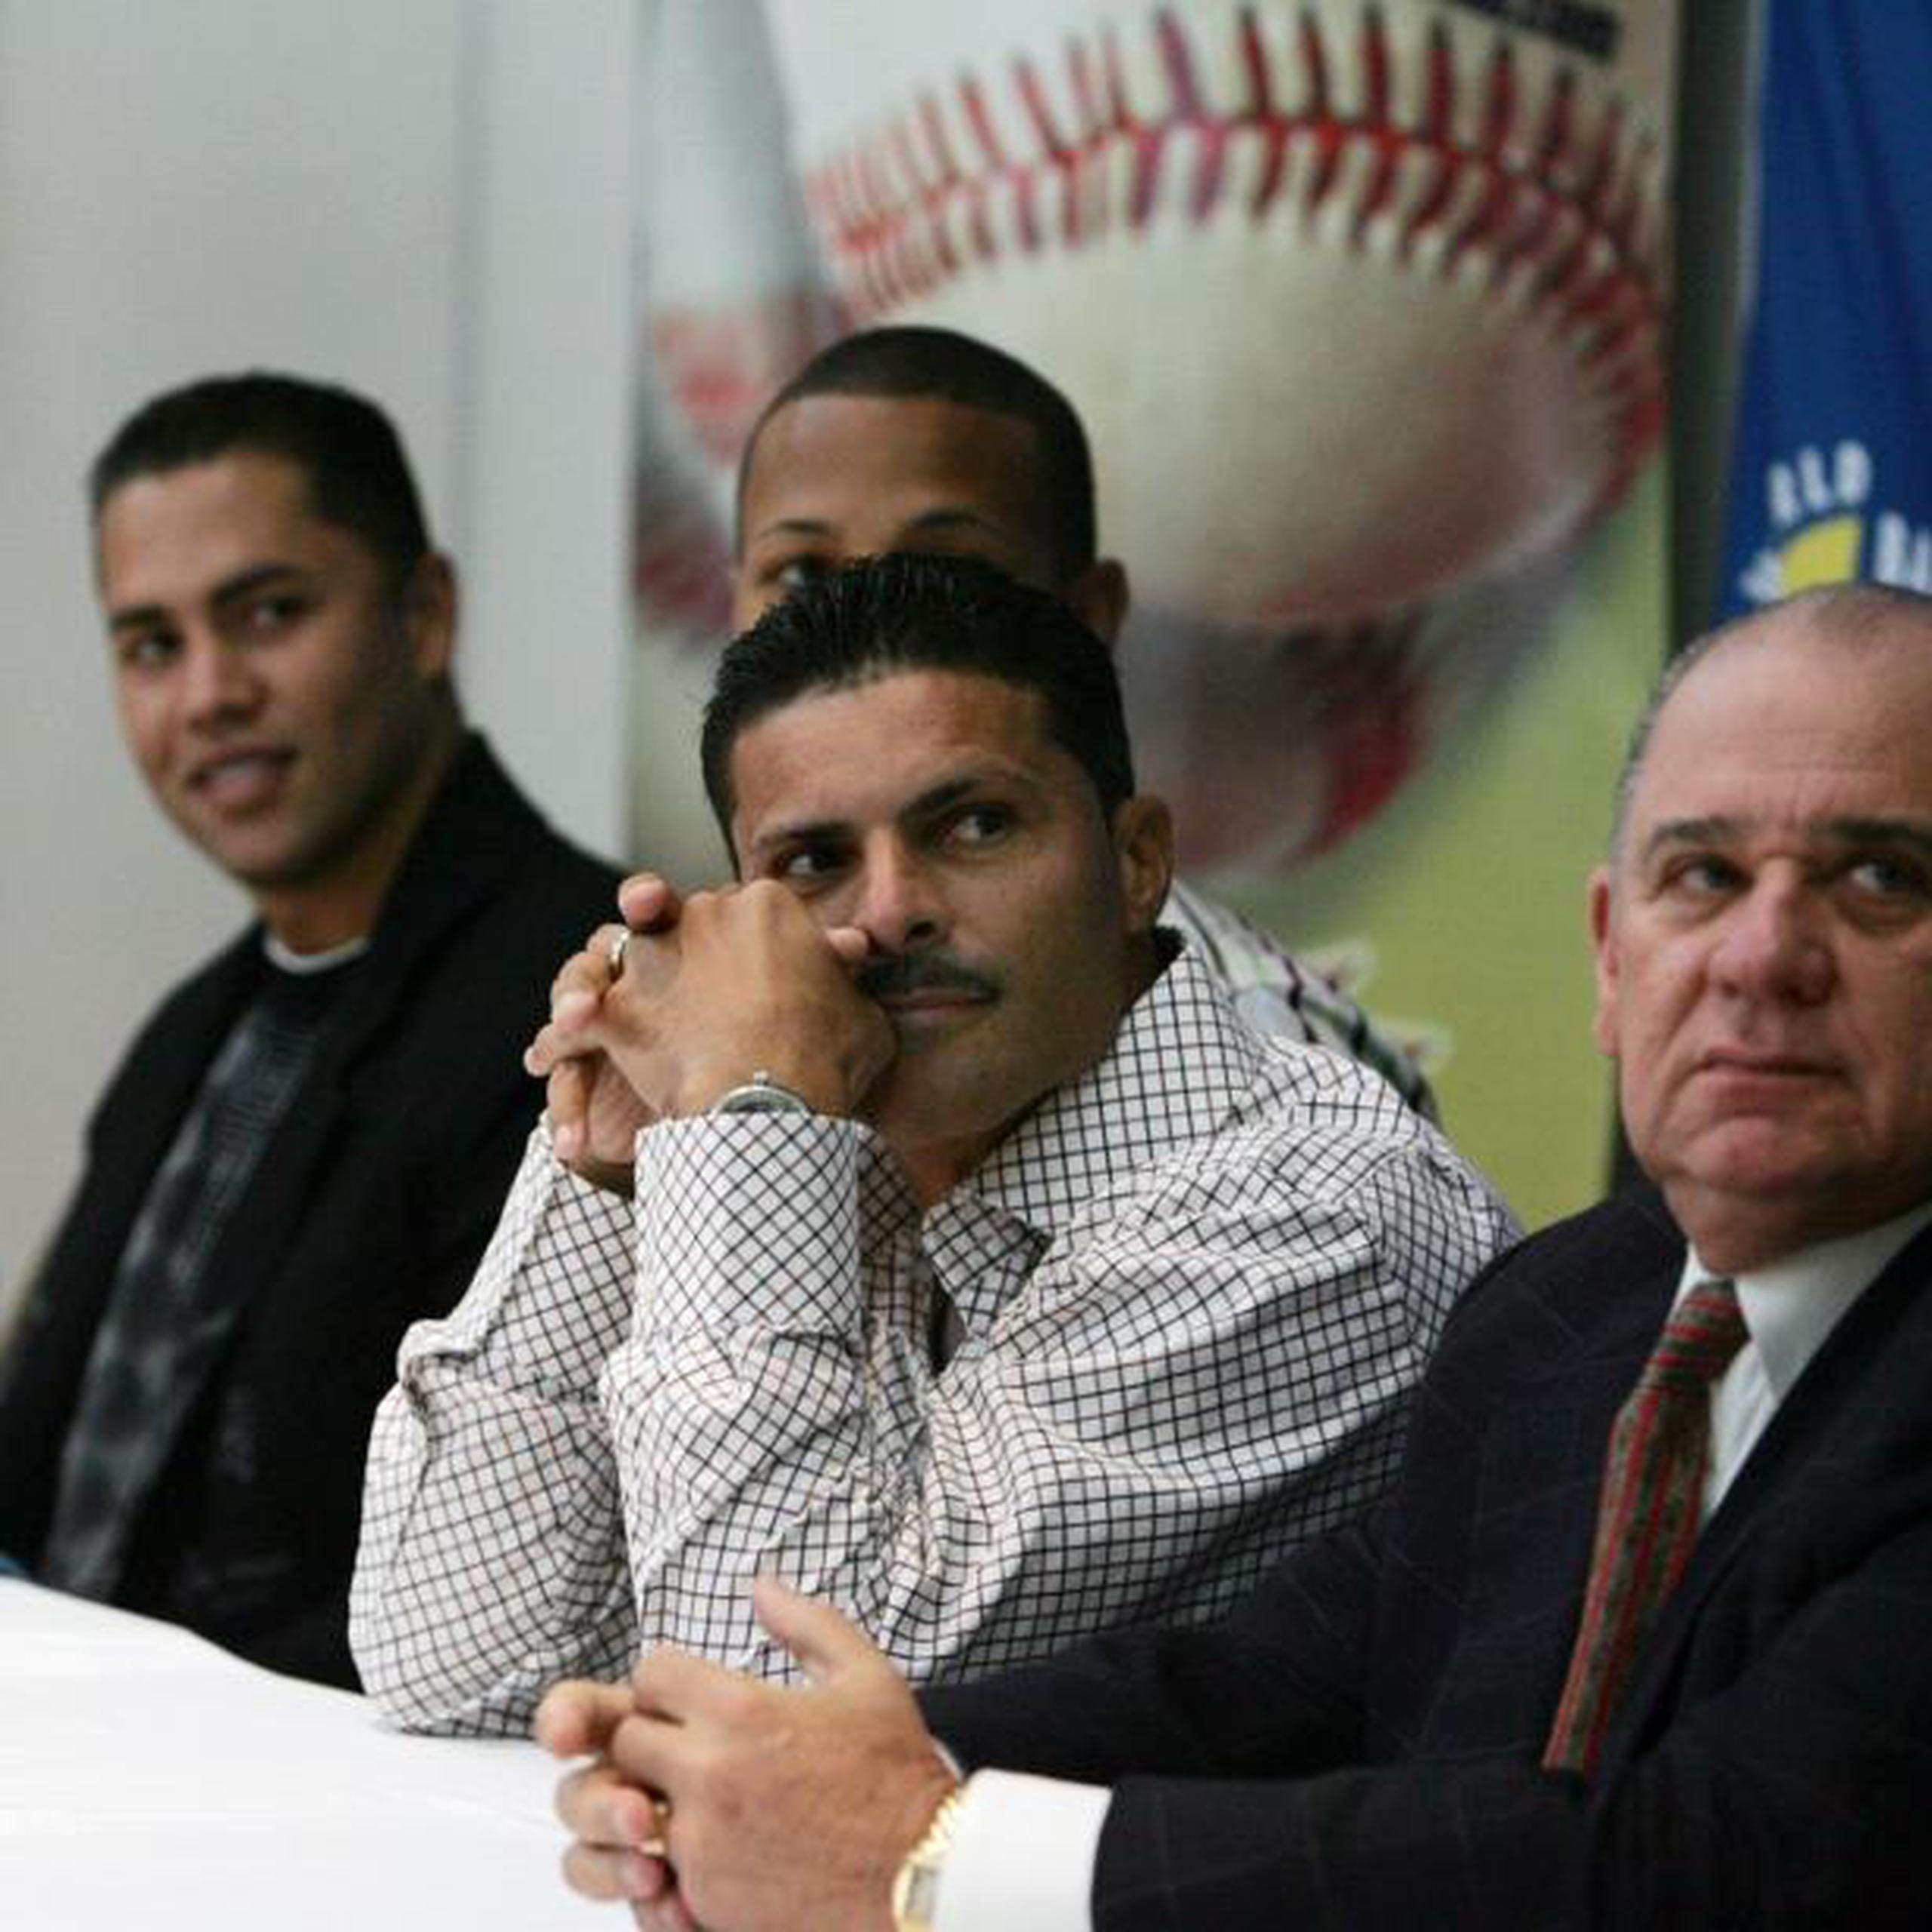 Carlos Beltrán (extrema izquierda) y Antonio Muñoz Bermúdez (extrema derecha) mientras participaban en una conferencia de prensa previo al Clásico Mundial de Béisbol 2006. (Archivo)